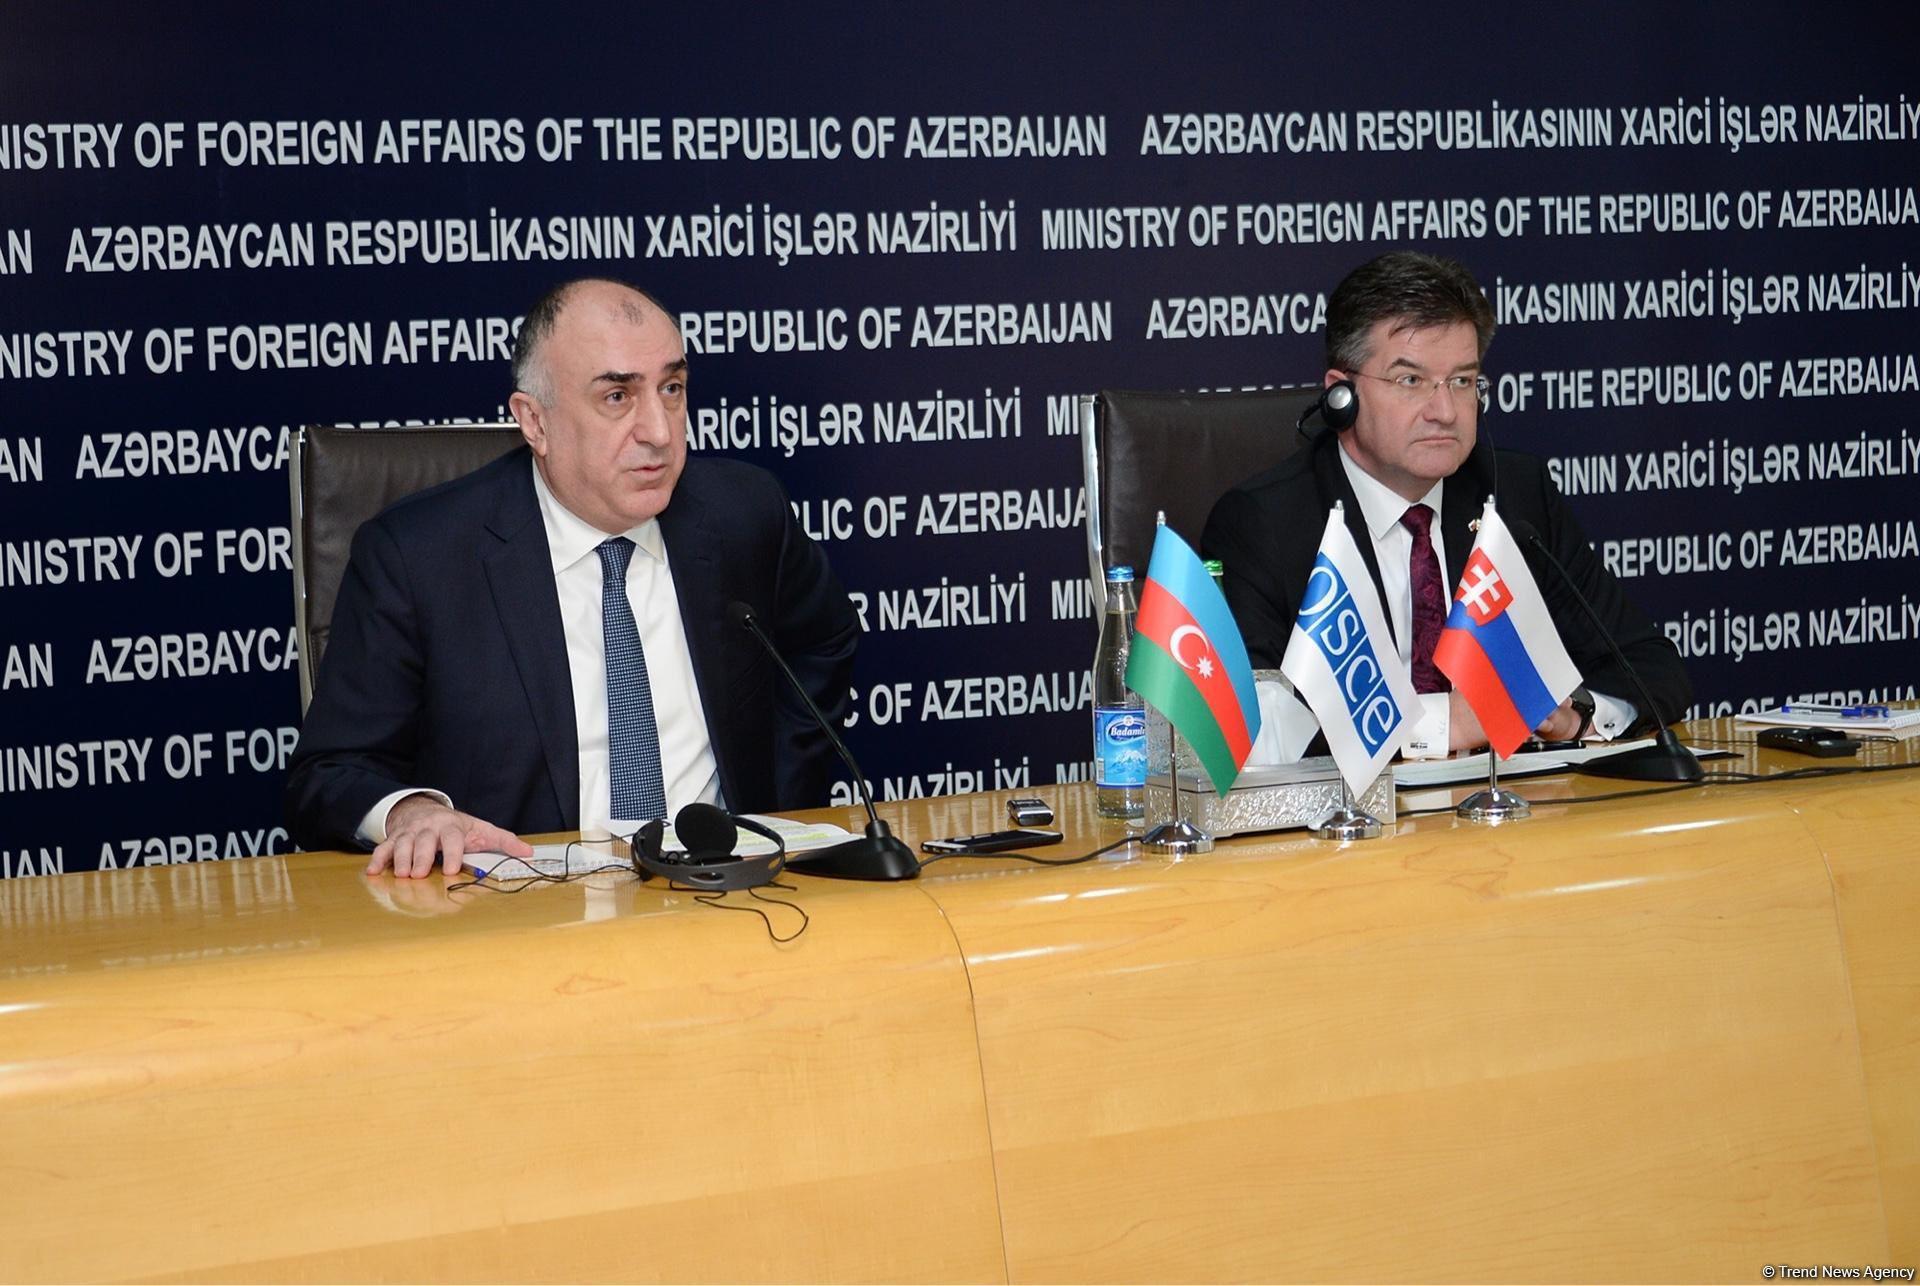 Azerbaijan, OSCE mull Karabakh conflict settlement (PHOTO)